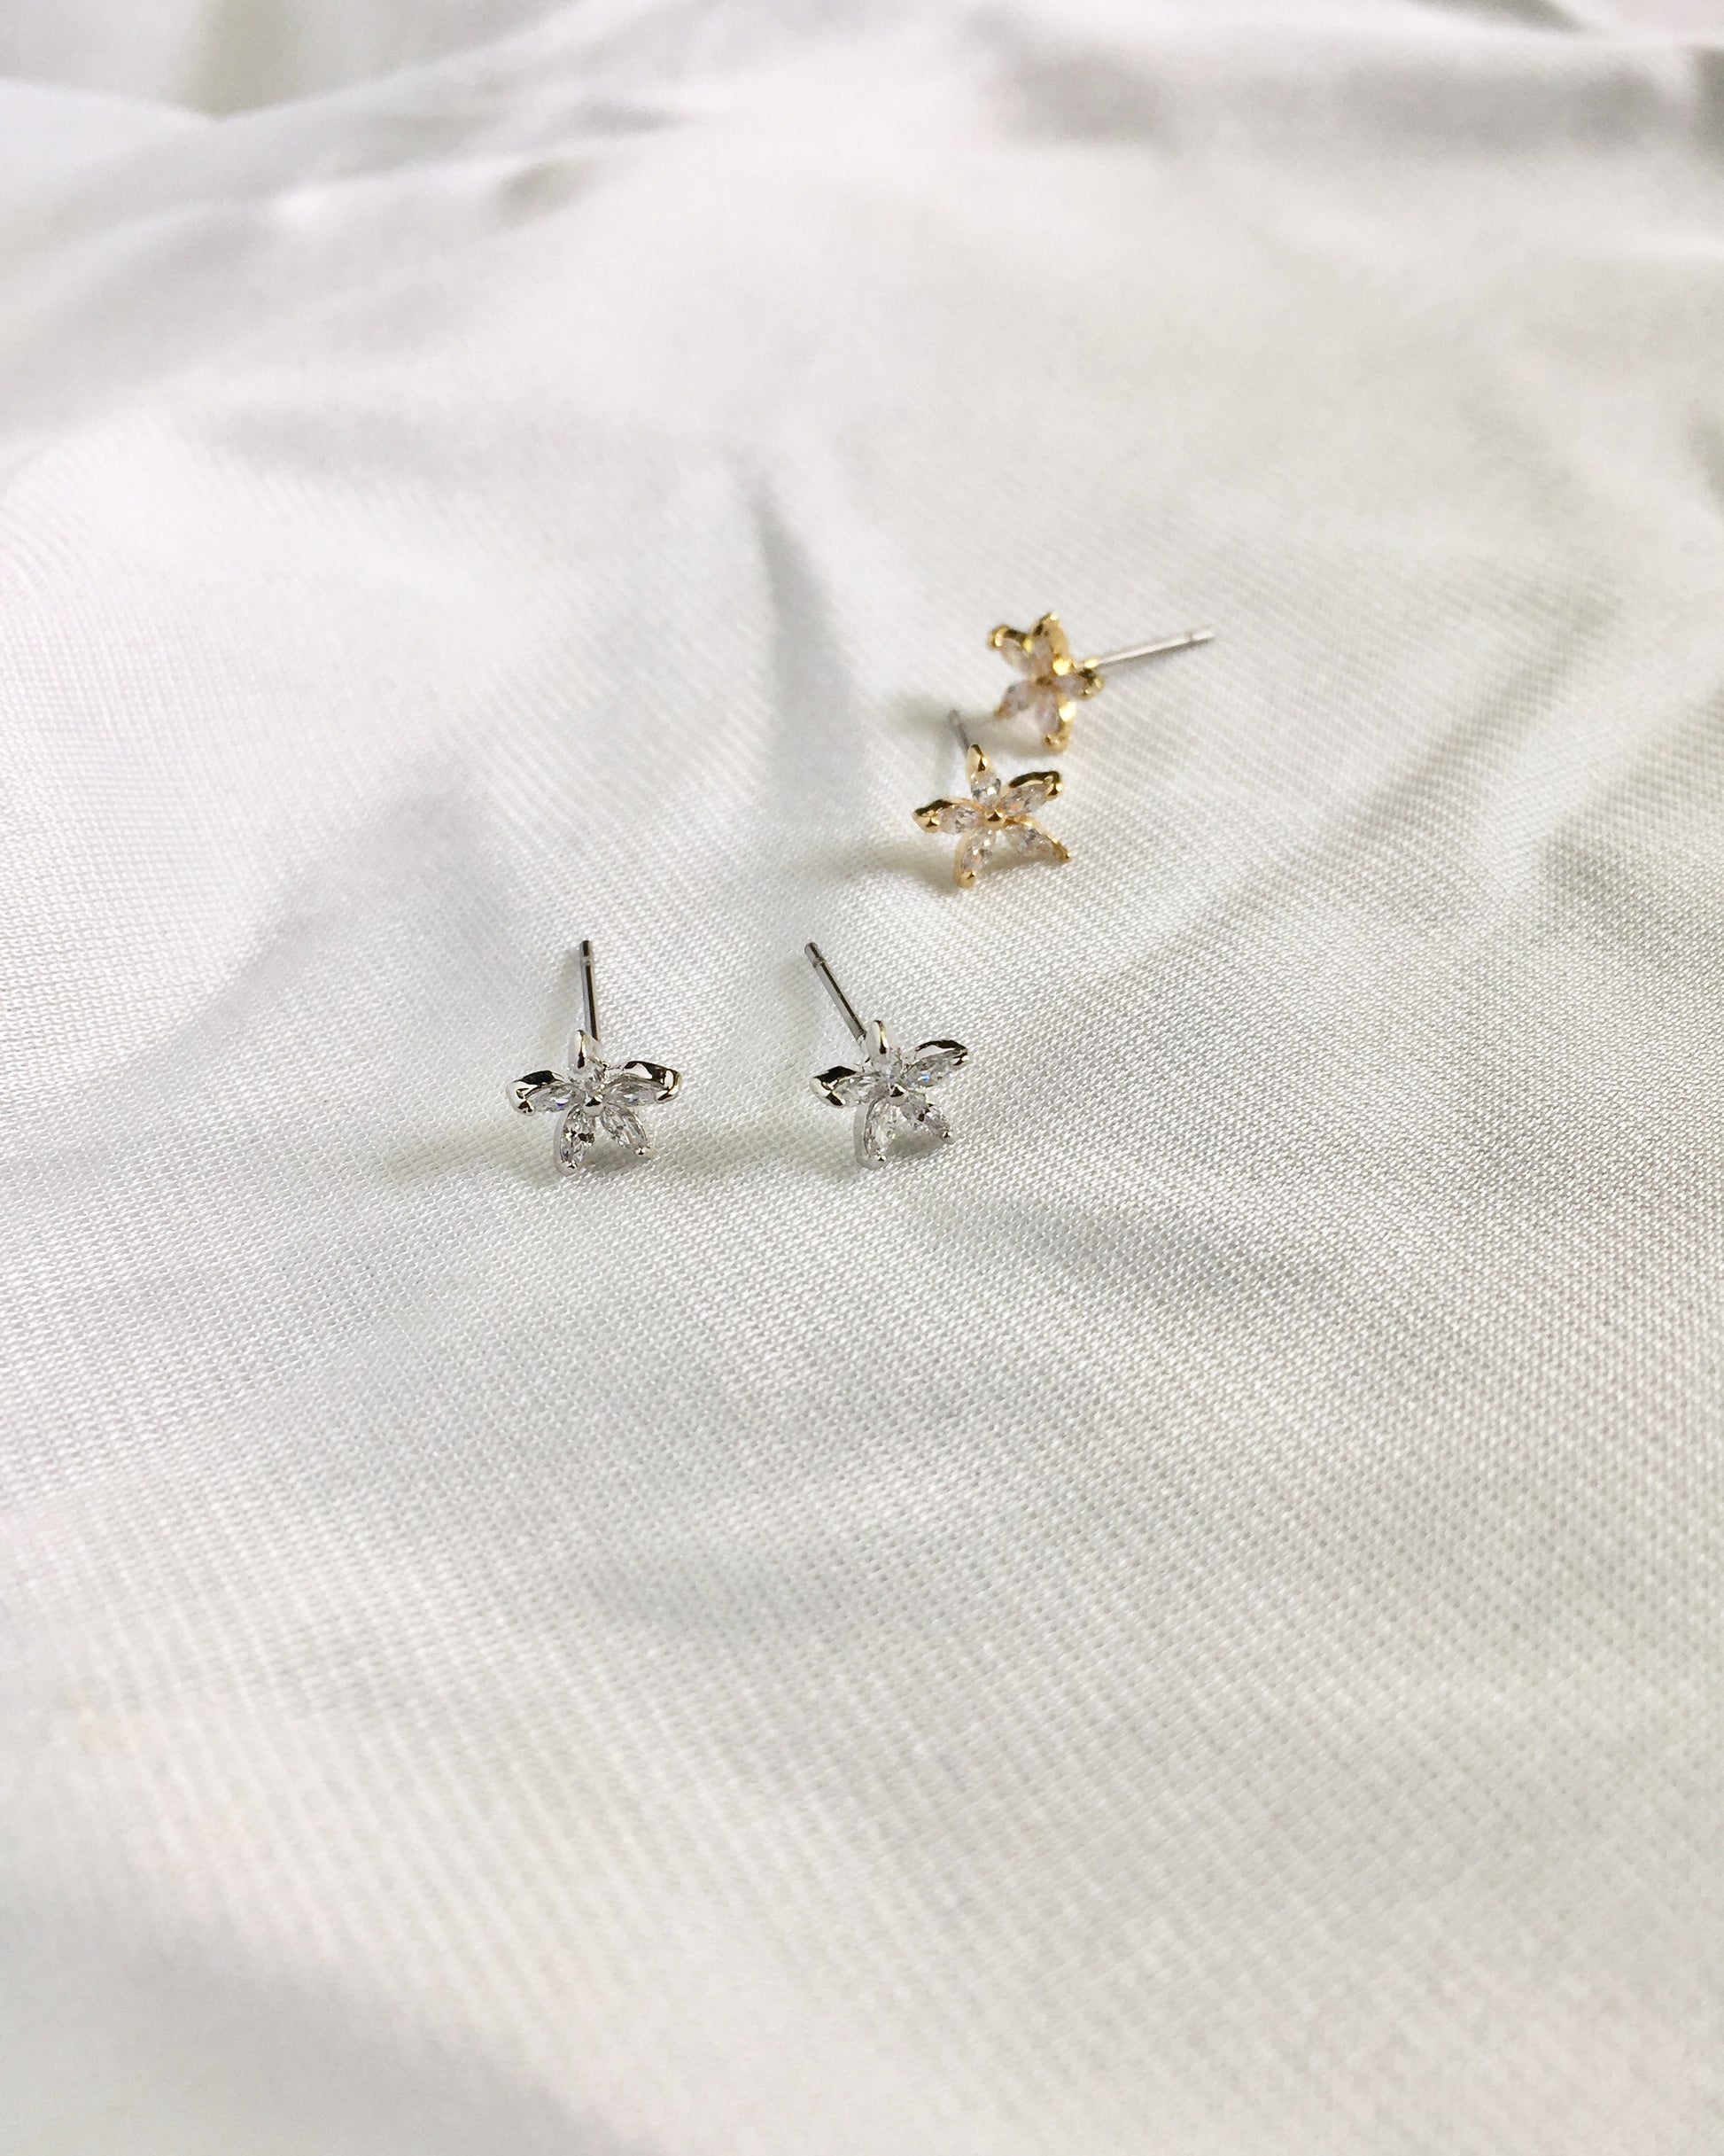 Flower CZ Stud Earrings in Gold or Silver | Dainty Stud Earrings | Delicate Stud Earrings | IB Jewelry